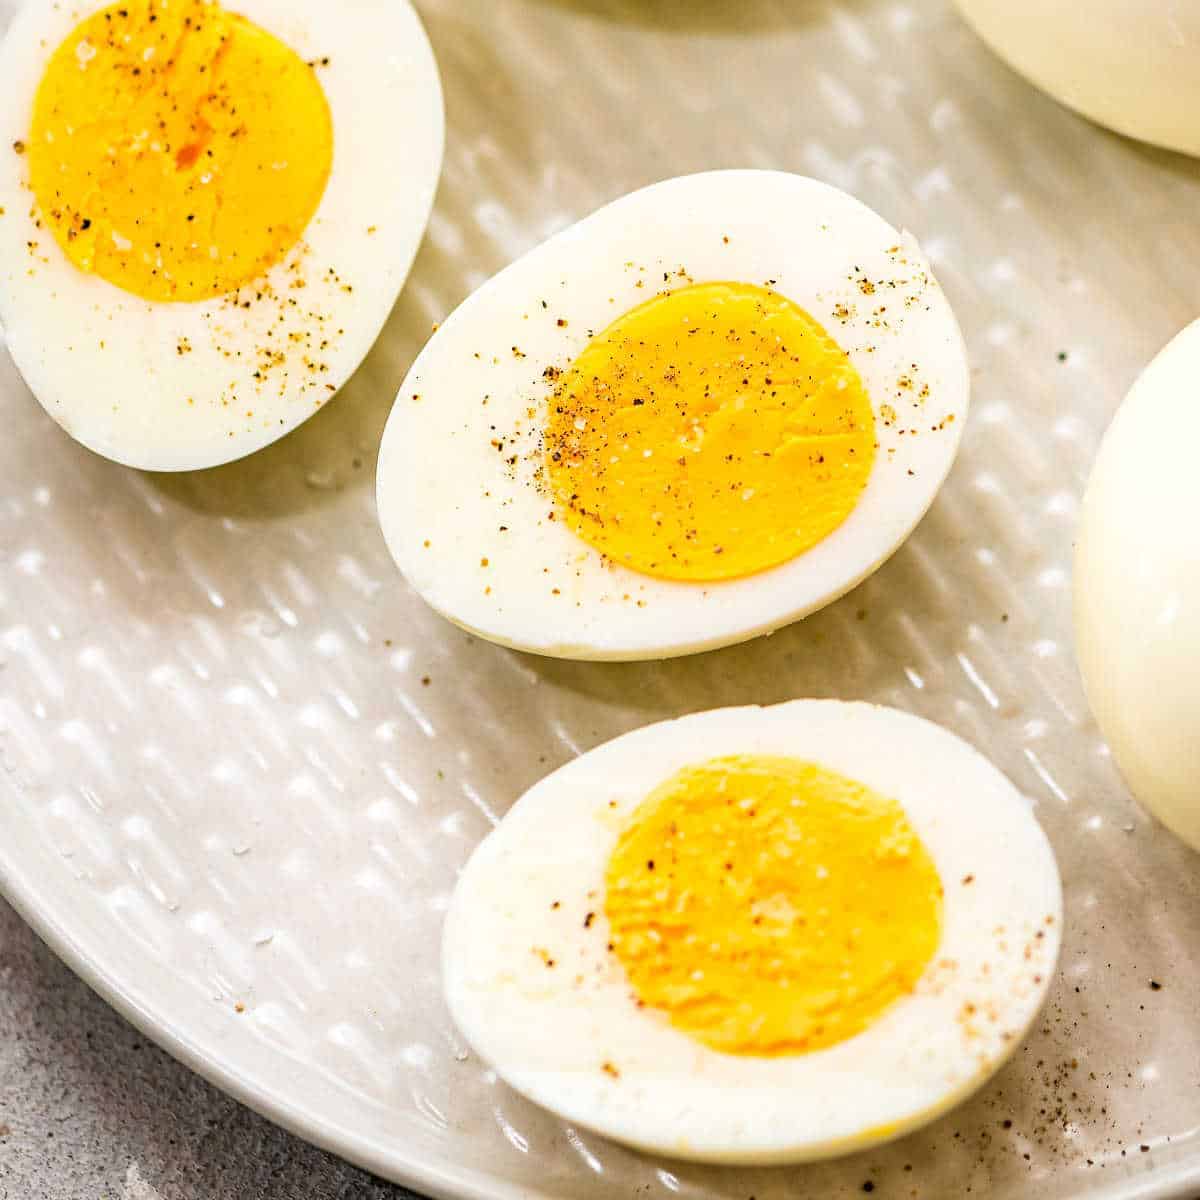 https://www.julieseatsandtreats.com/wp-content/uploads/2021/03/How-to-Make-Hard-Boiled-Eggs.jpg